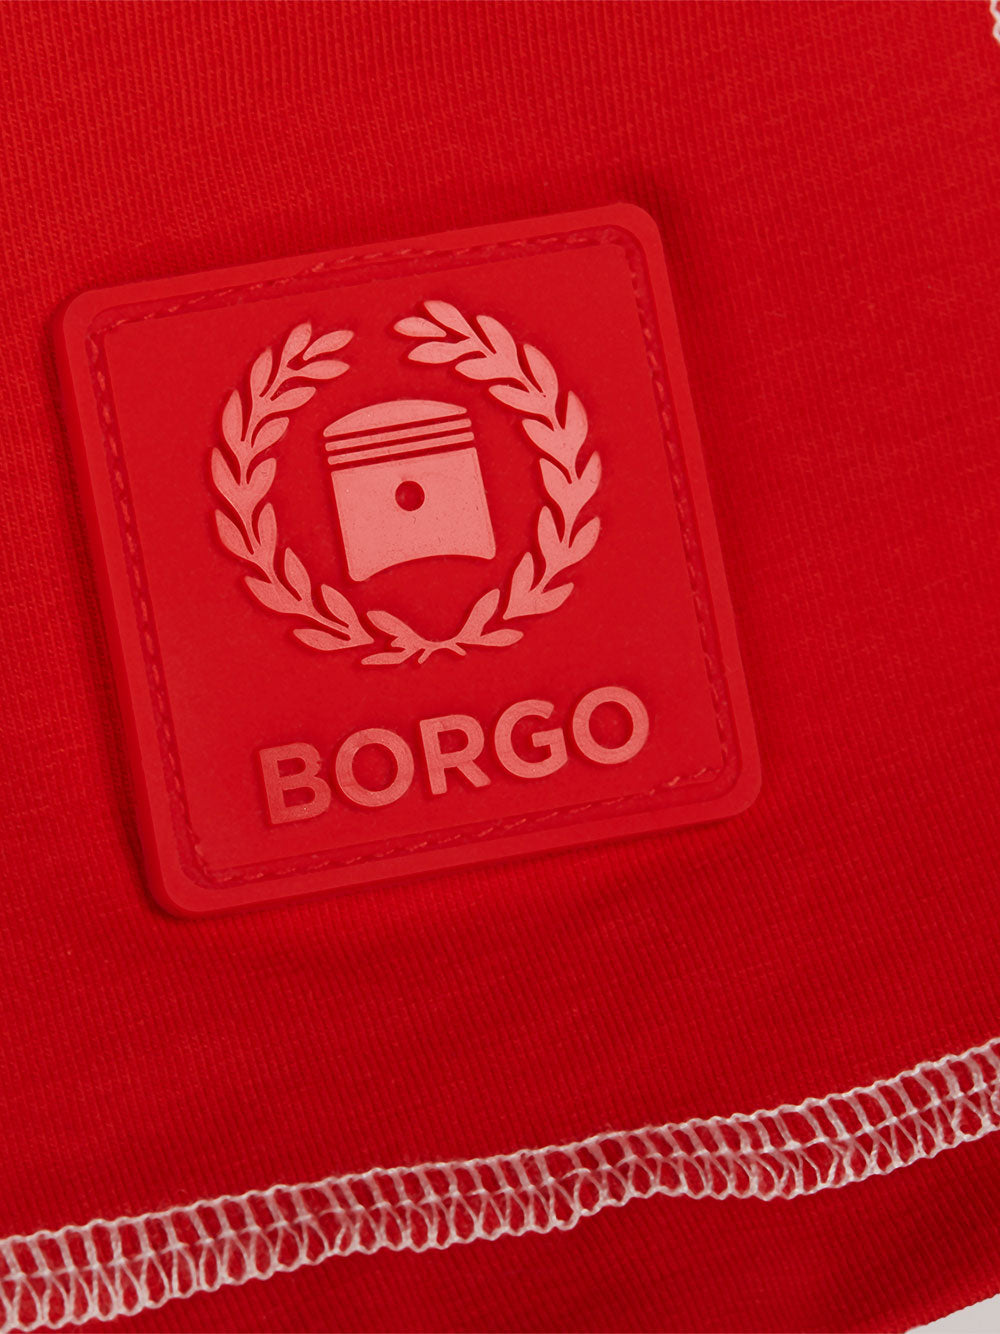 BORGO Andalusia Longlap Rosso T-Shirt